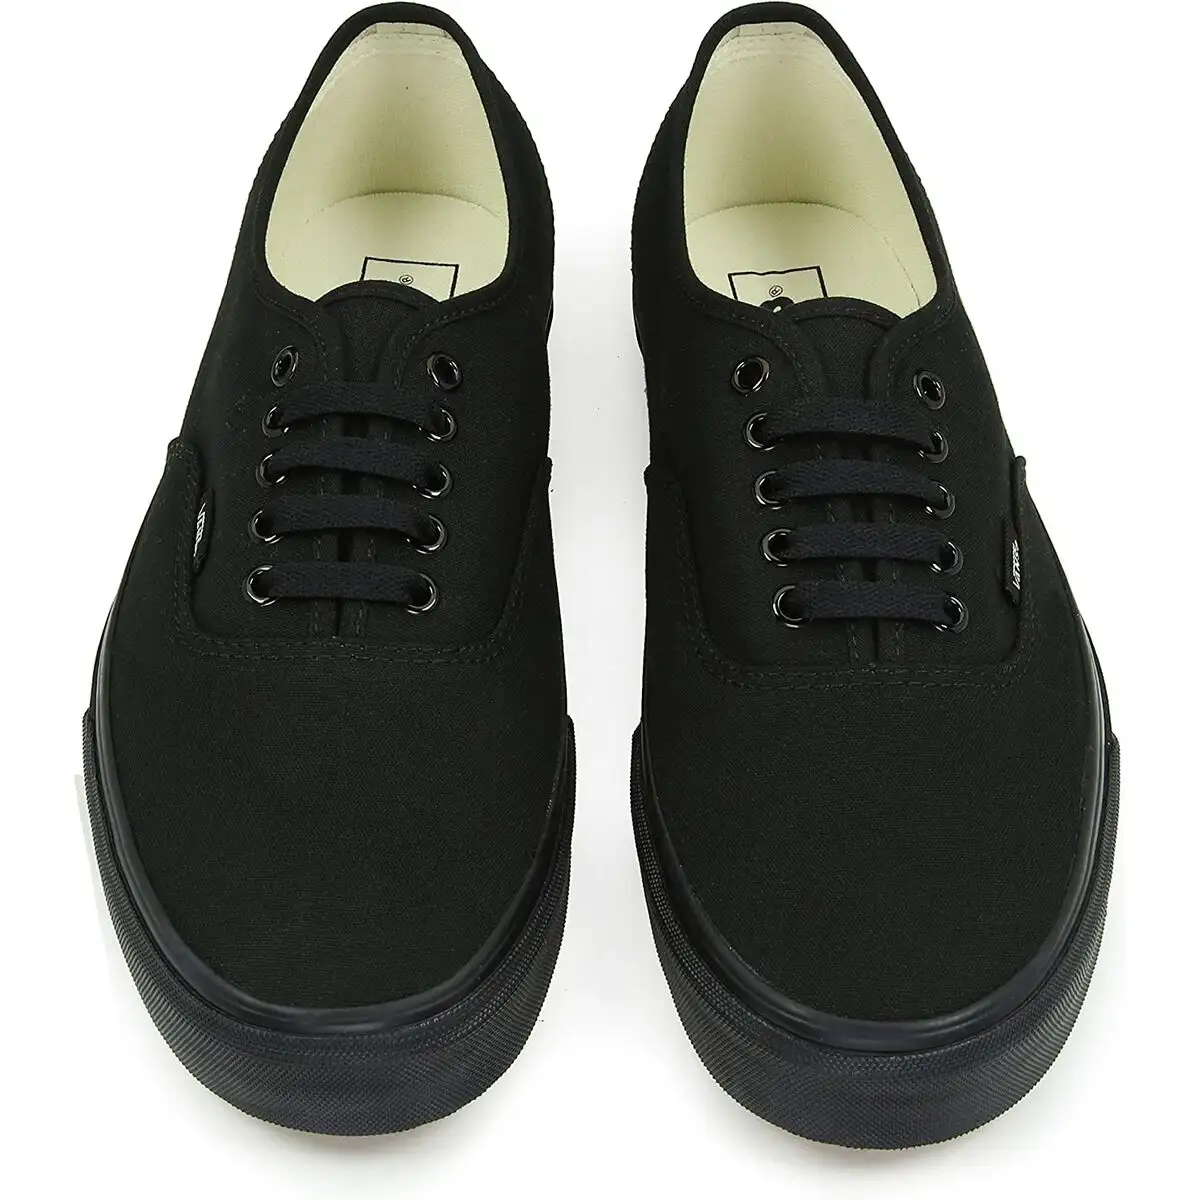 Chaussures casual homme vans authentic vee3bka noir_7713. DIAYTAR SENEGAL - Votre Source de Découvertes Shopping. Découvrez des trésors dans notre boutique en ligne, allant des articles artisanaux aux innovations modernes.